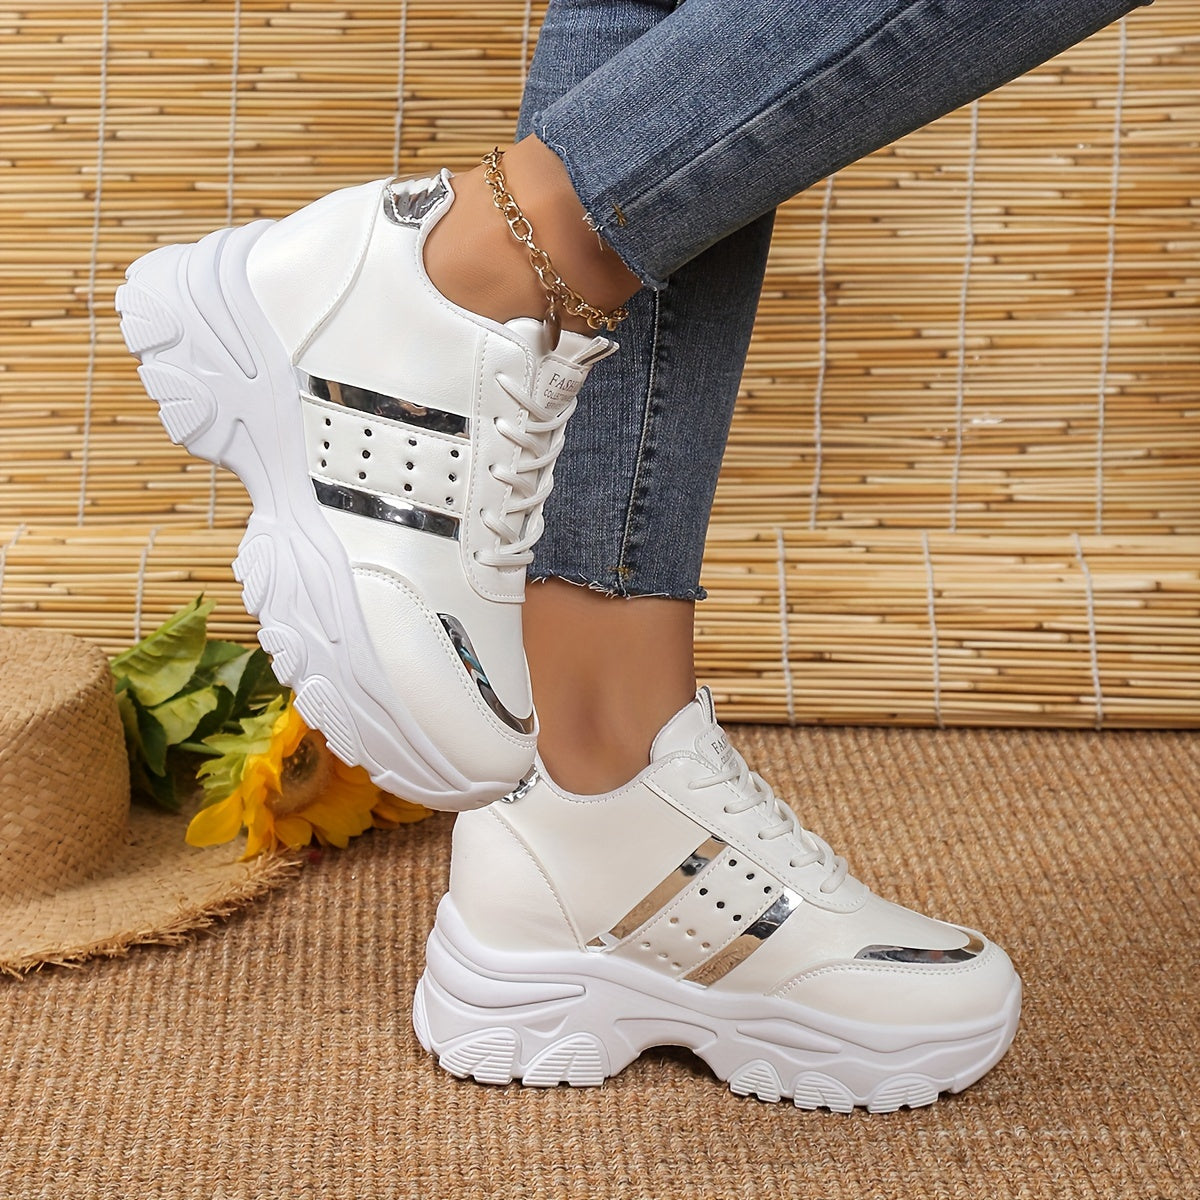 Damen Sneakers in trendiger einfarbiger Optik, mit Schnürung, weicher Sohle und rutschfestem Plateau. Vielseitige Schuhe mit niedrigem Schaft zum Höherwerden im Urlaub.